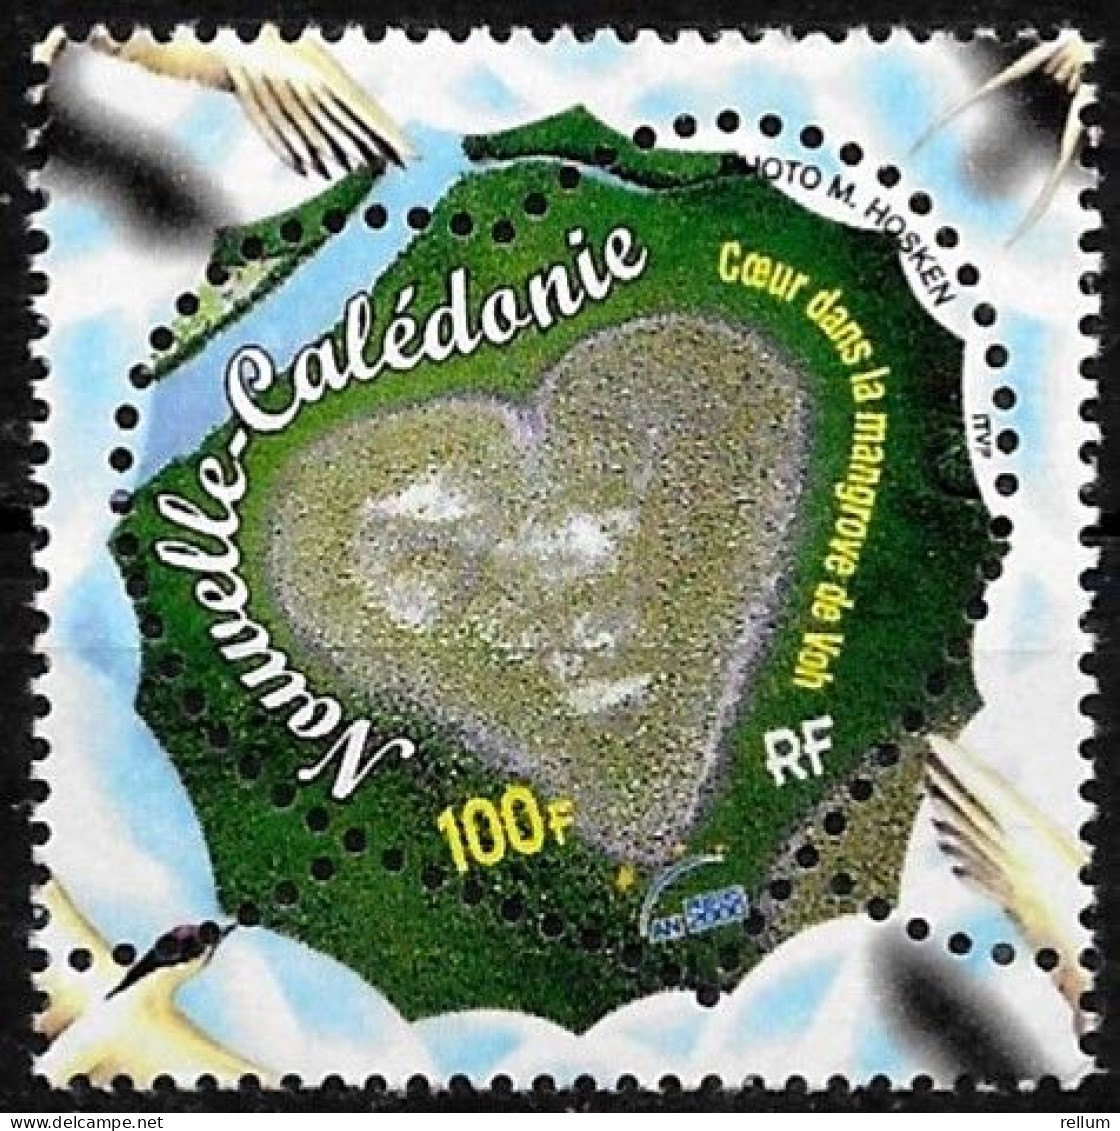 Nouvelle Calédonie 2000 - Yvert Et Tellier Nr. 818 - Michel Nr. 1206 ** - Neufs